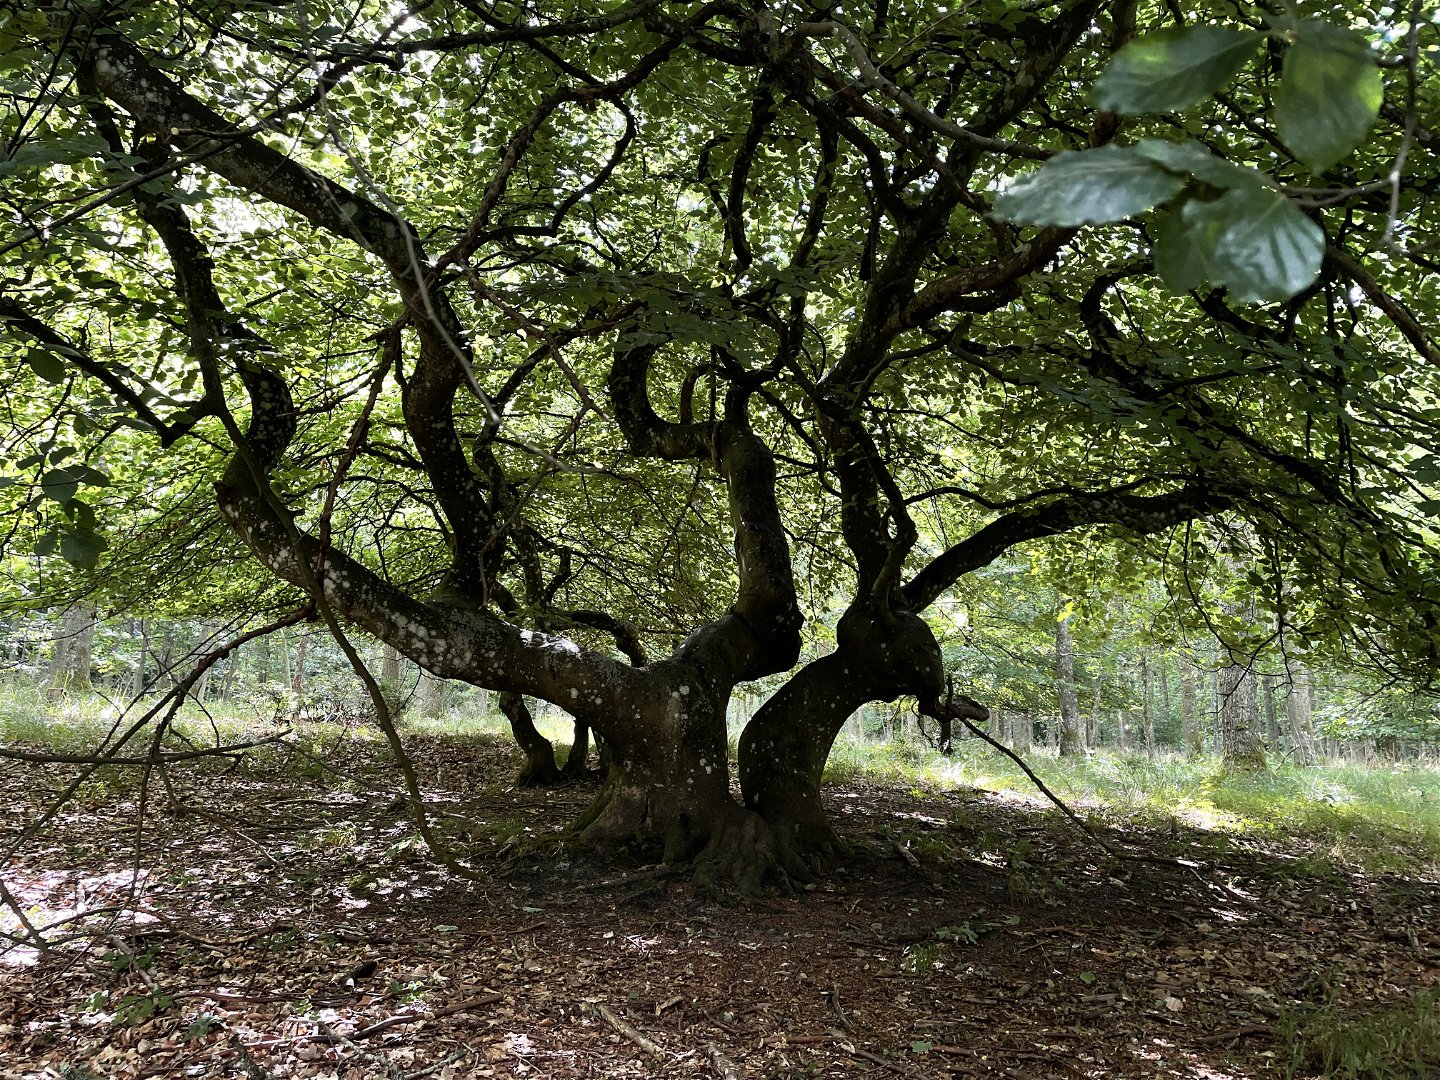 vresbok (träd med skruvade, snirkliga grenar)